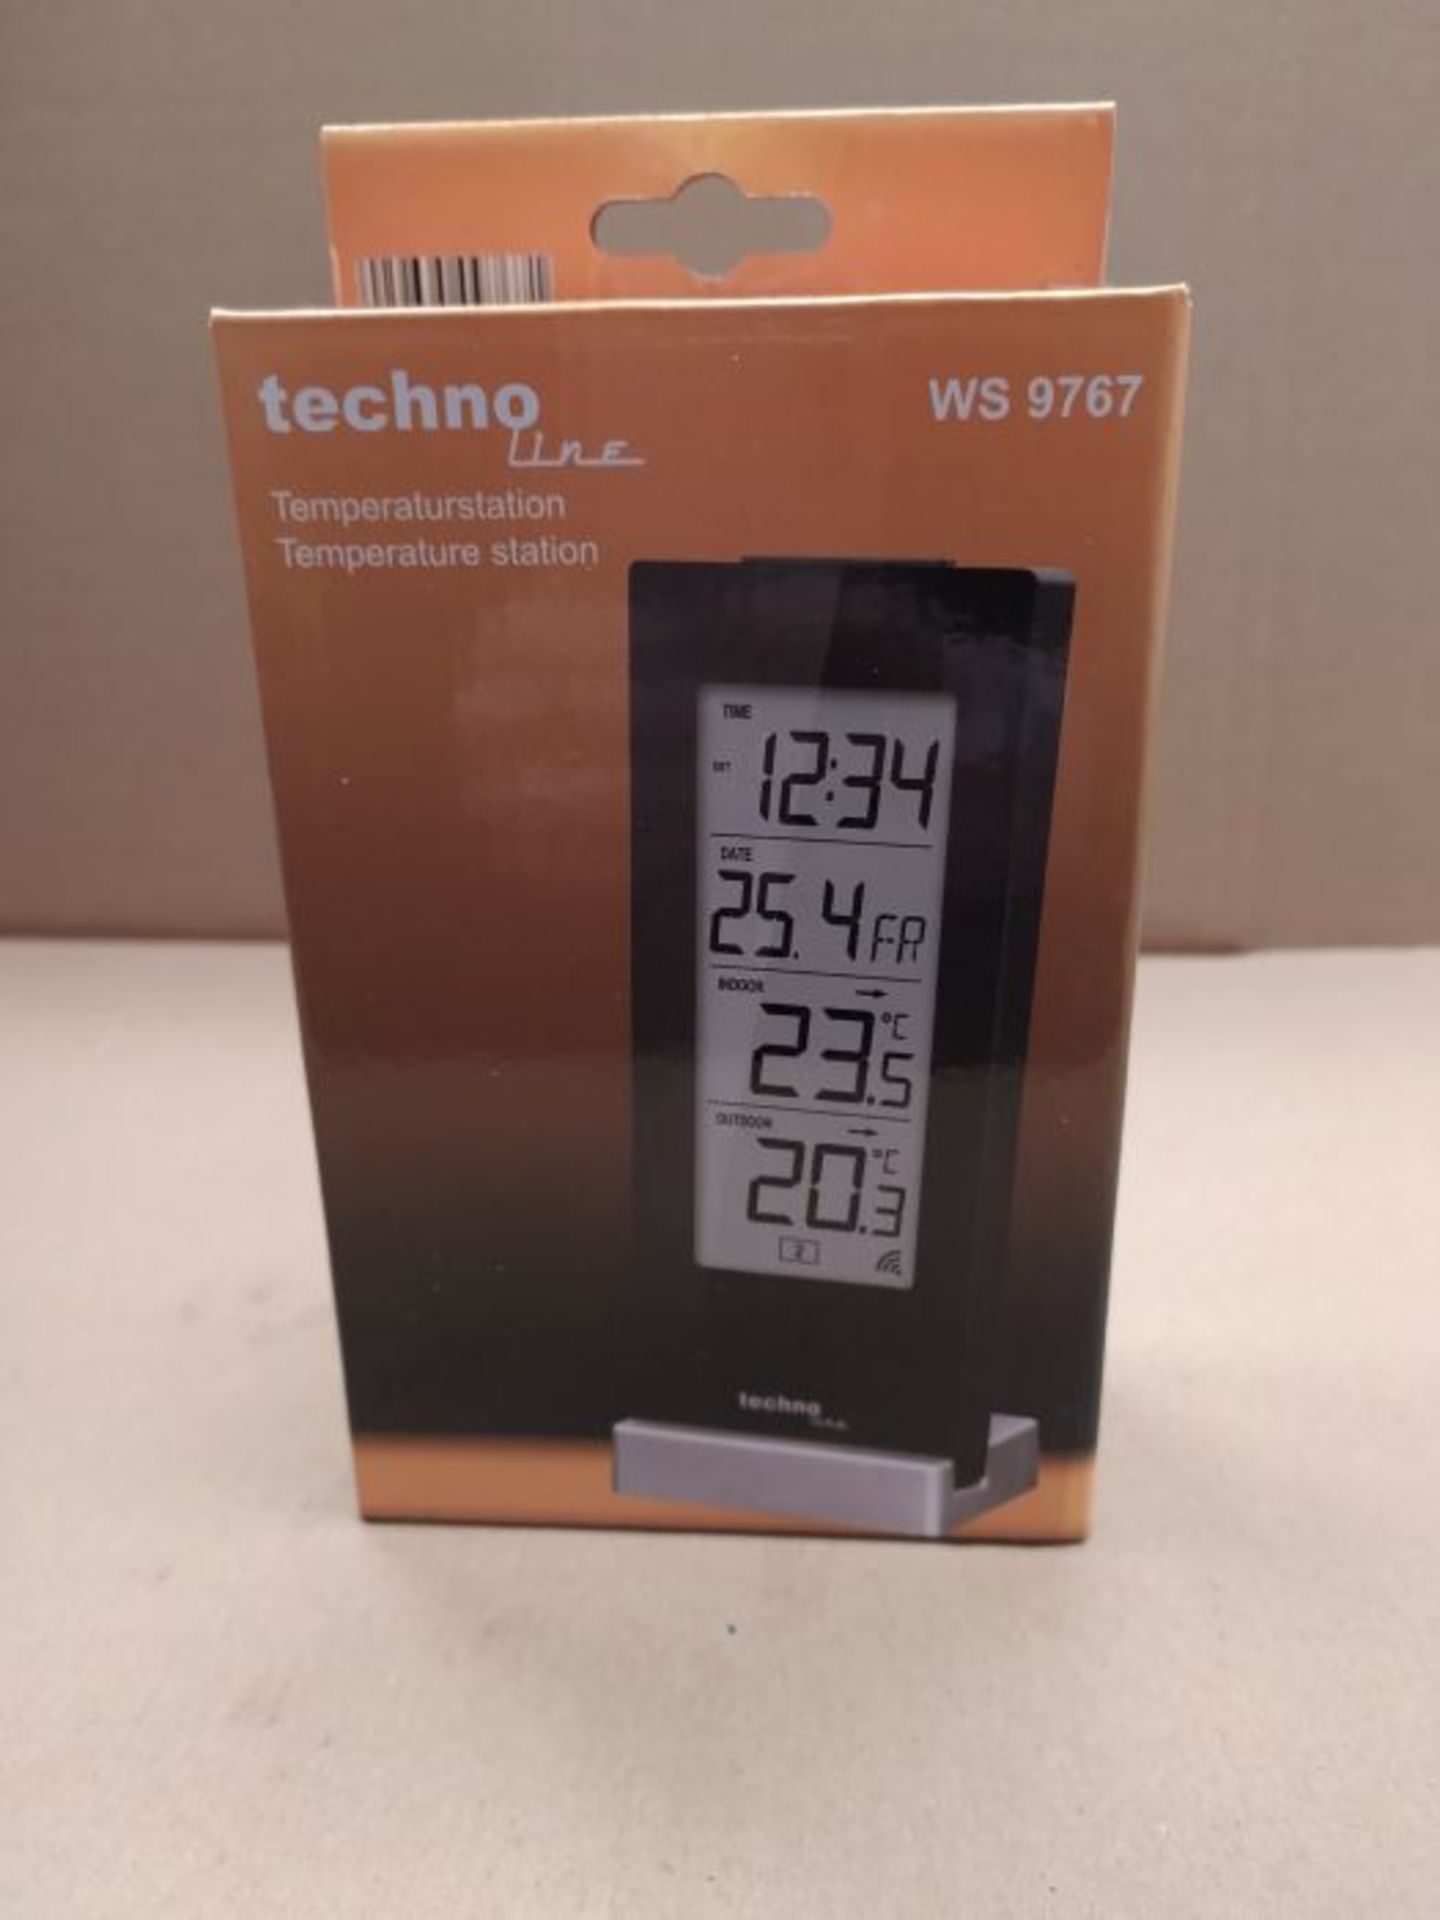 Technotrade Technoline WS 9767Temperature Station - Image 2 of 3